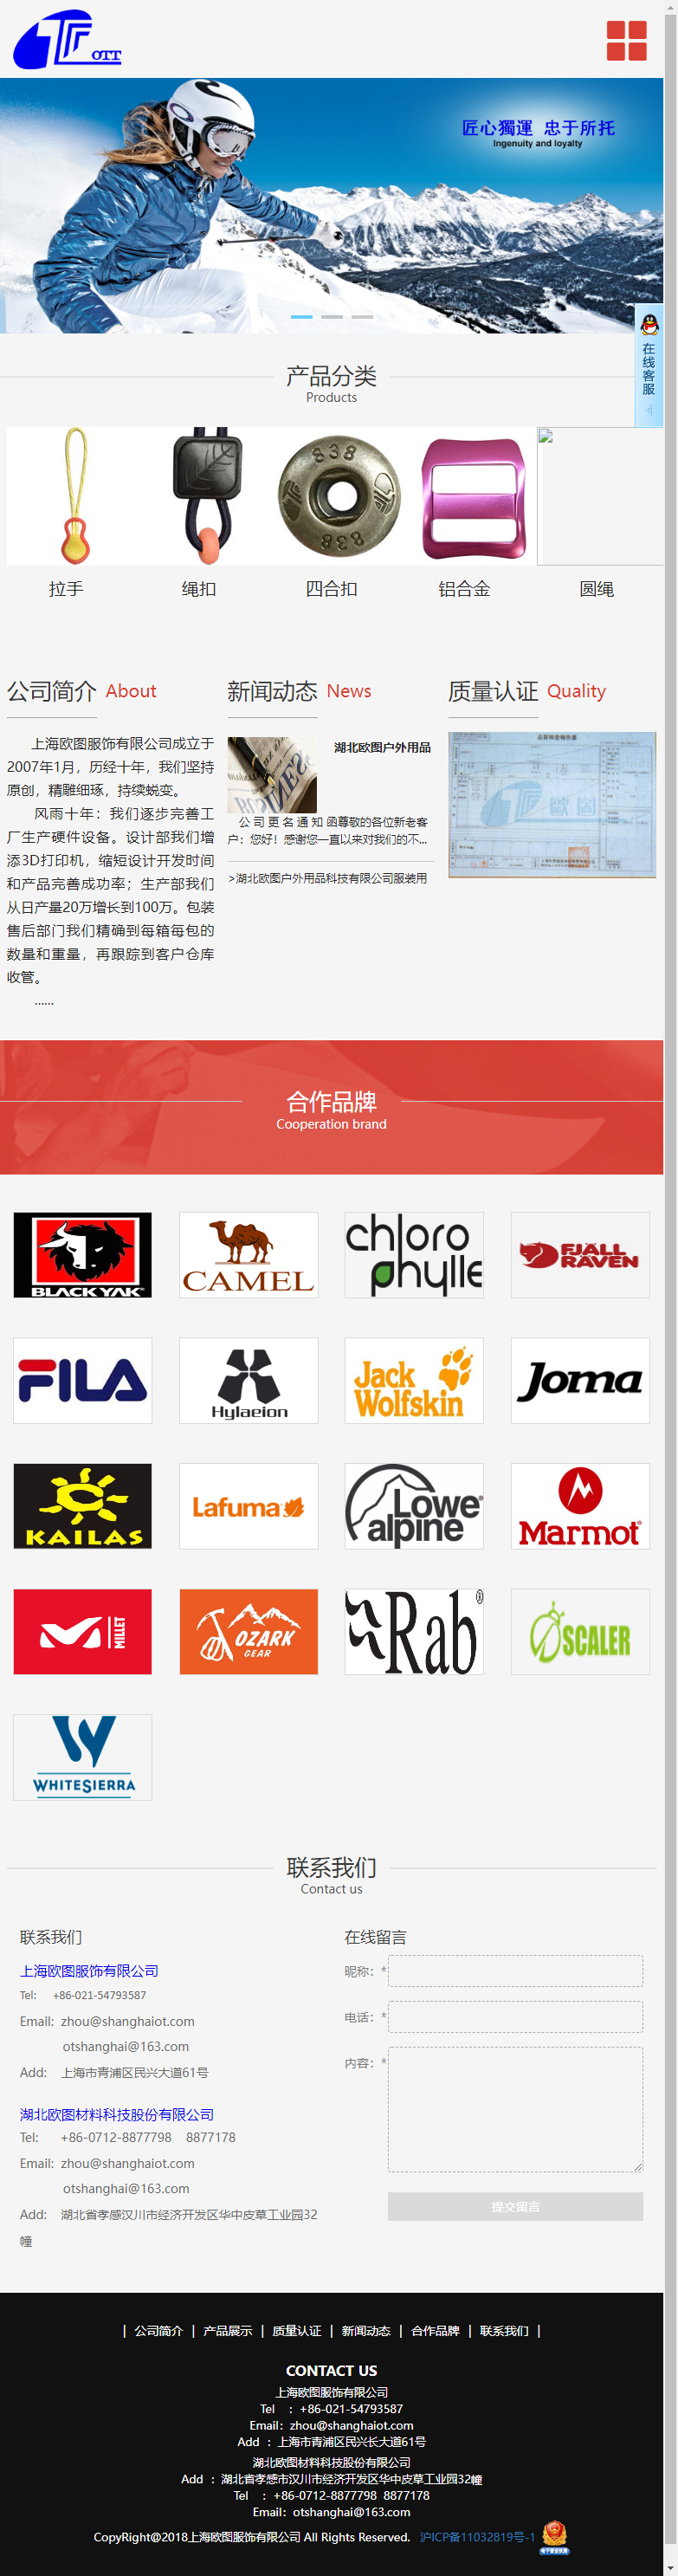 上海欧图服饰有限公司网站案例